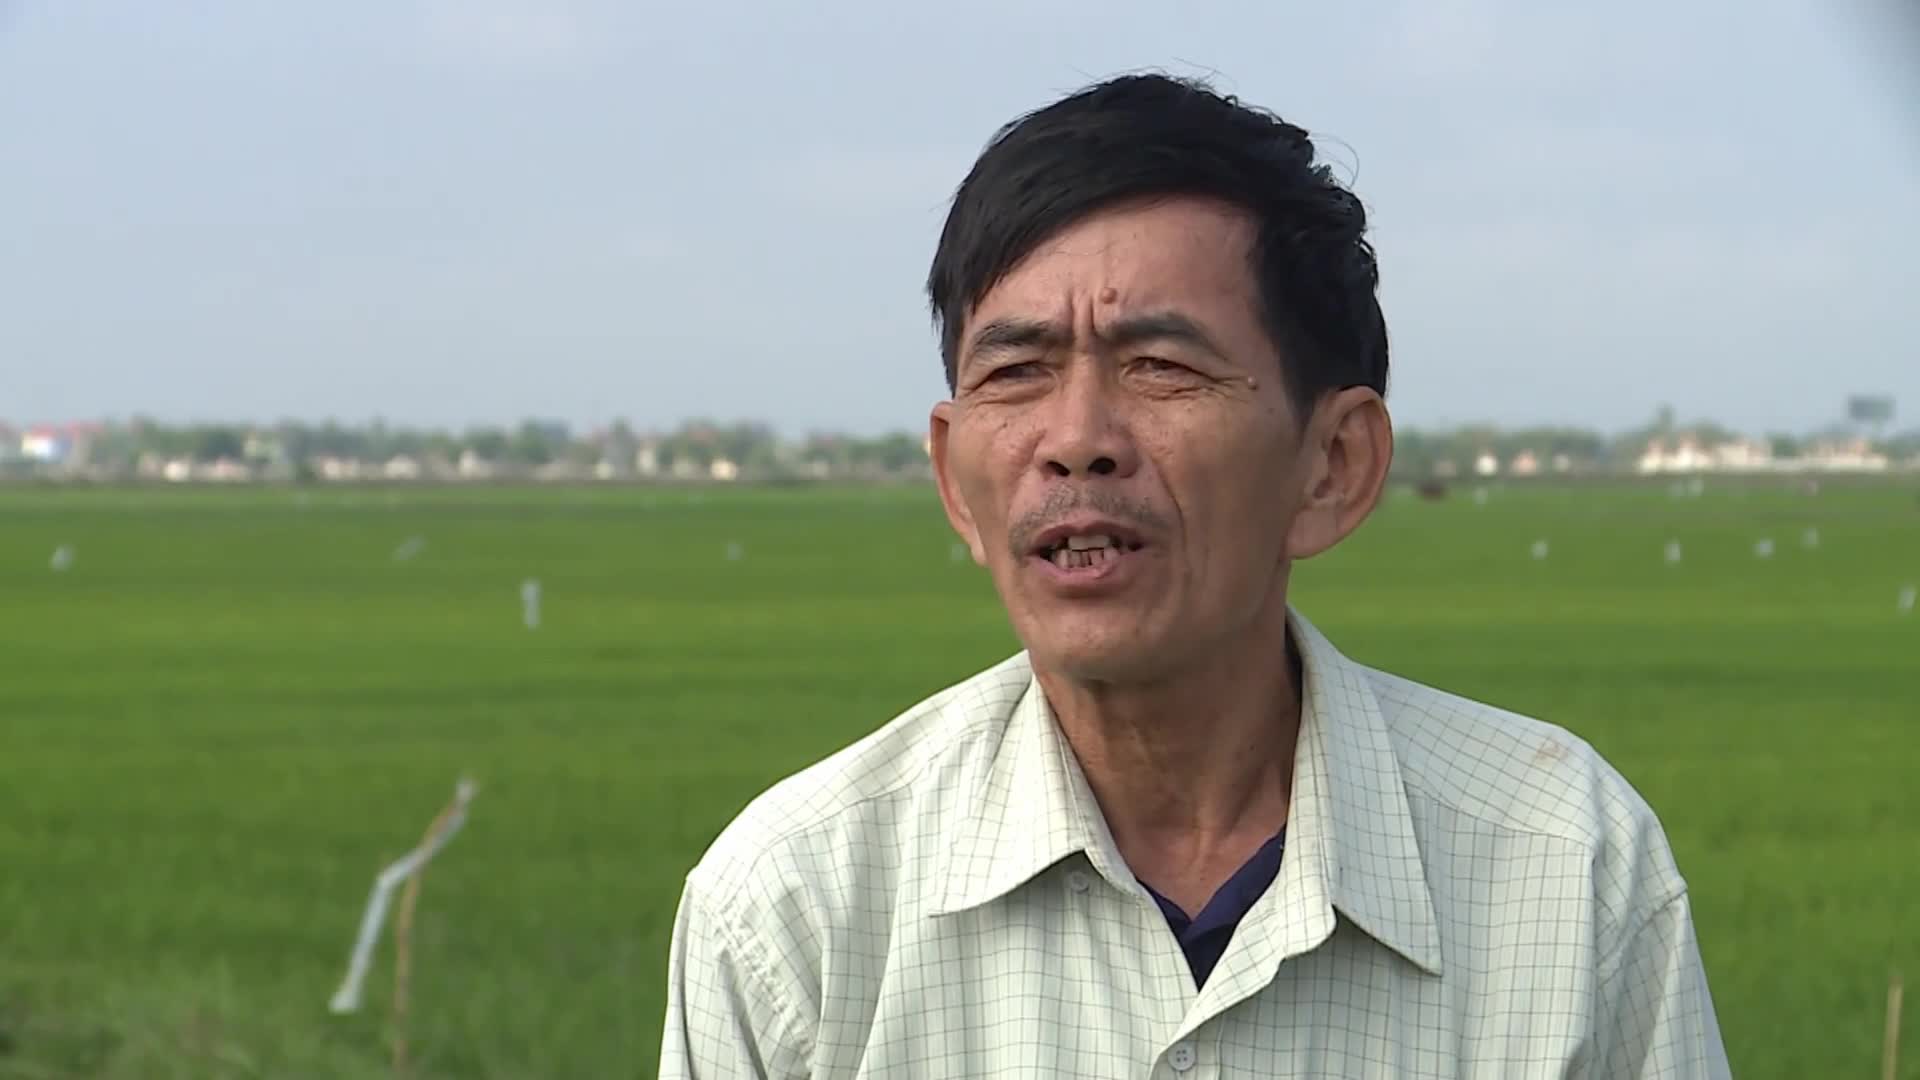 Ông Trần Văn Dù, trú xã Hàm Ninh cho biết các phương pháp đánh bắt chuột